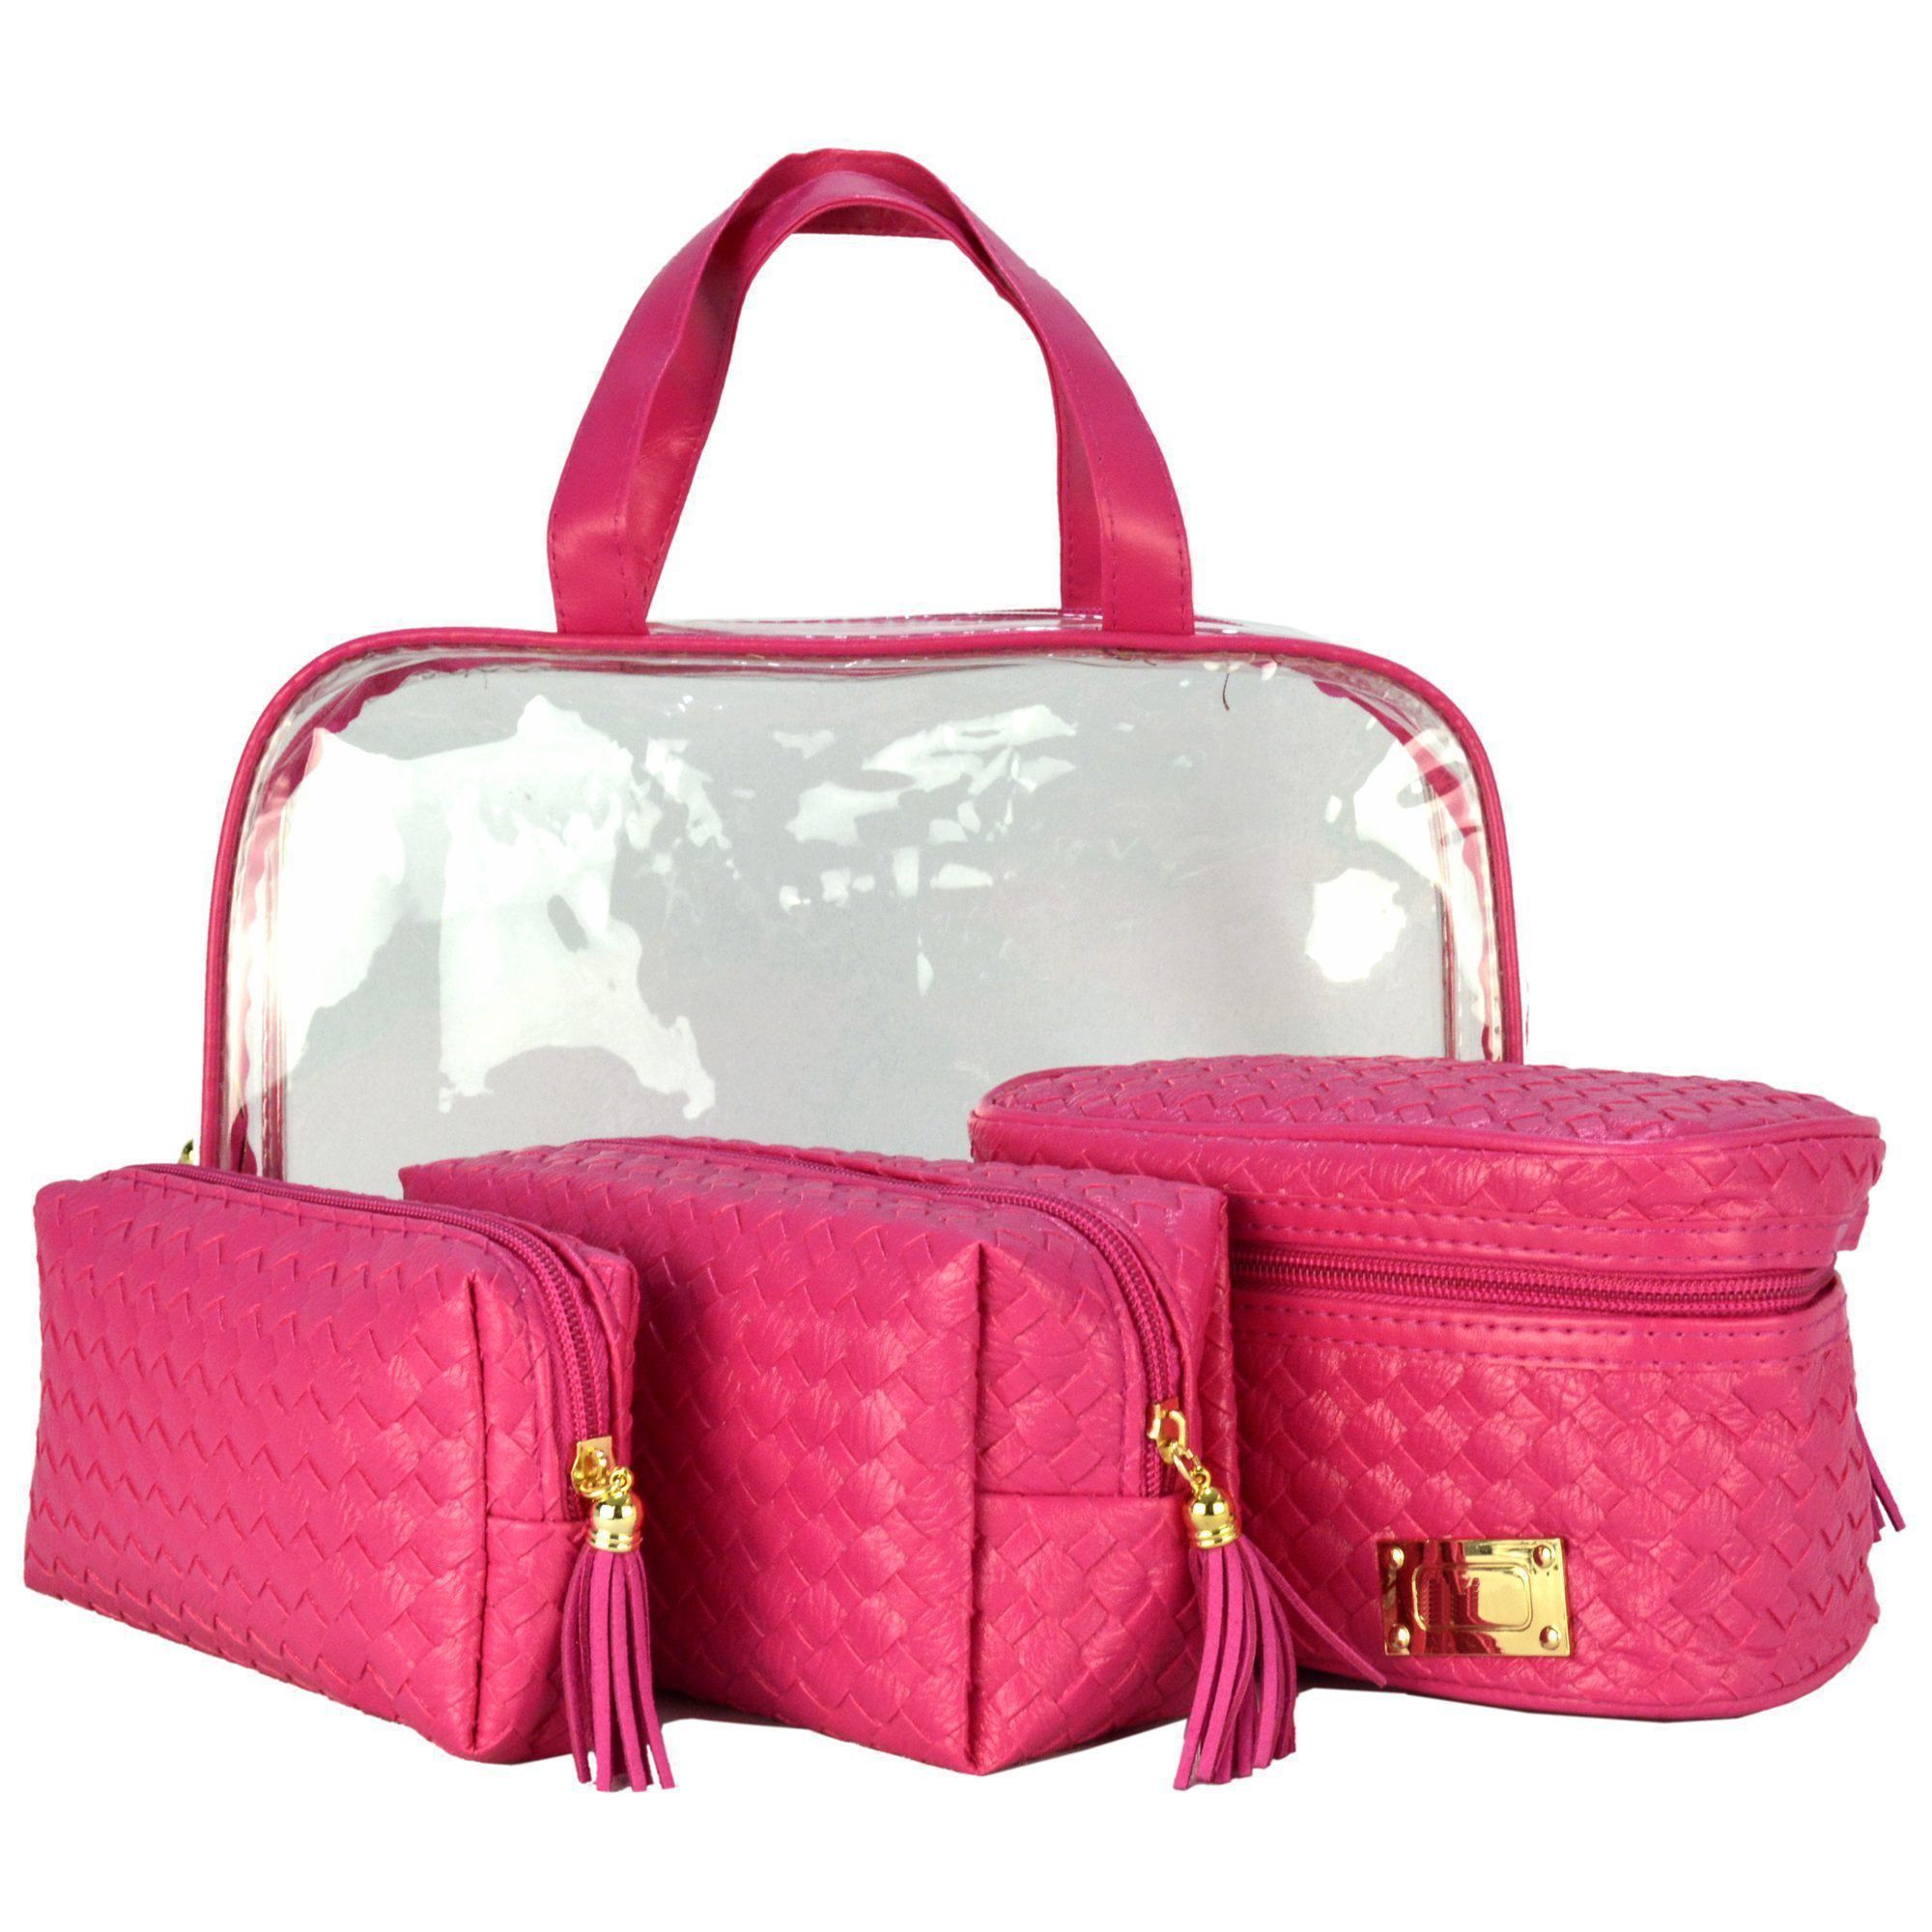 Frasqueiras Necessaire Feminina Luxo Pink Kit 4 Peças CBRN08216